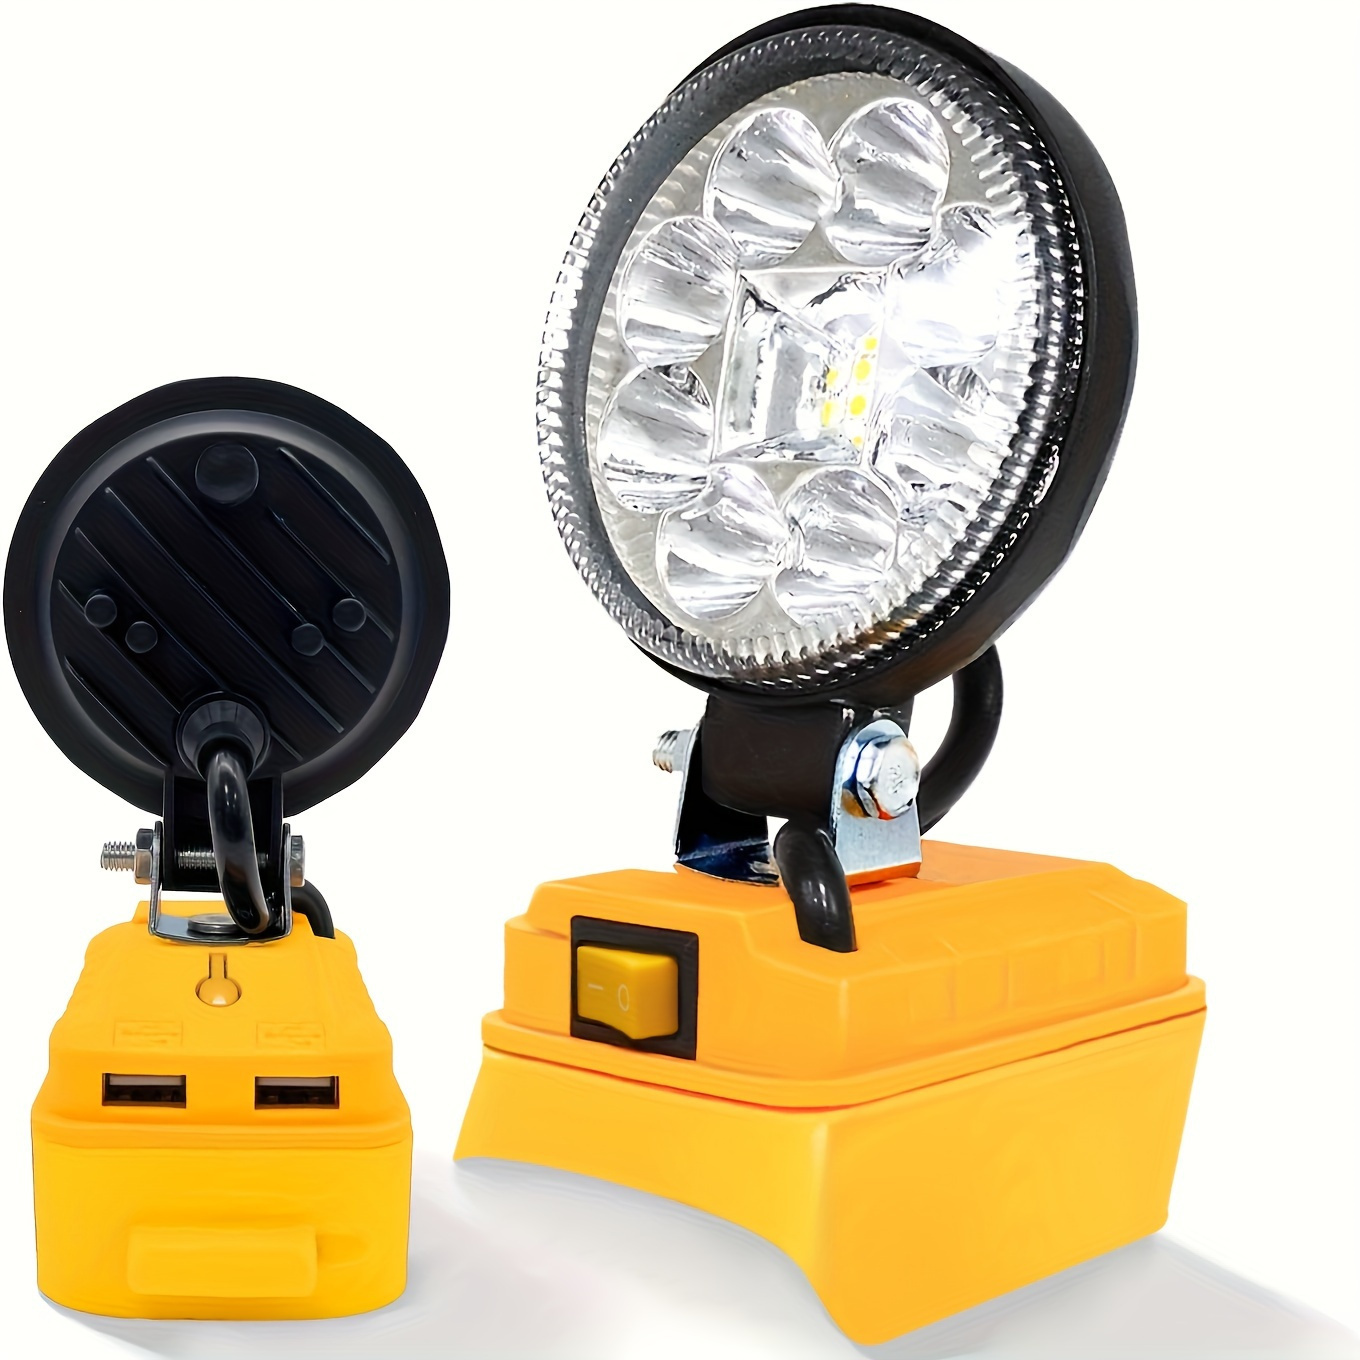 AKD - Barras de luz LED ámbar de 7 pulgadas, parte AKD de 36 W, delgadas,  de una sola fila, luces de conducción puntuales, luces antiniebla  amarillas